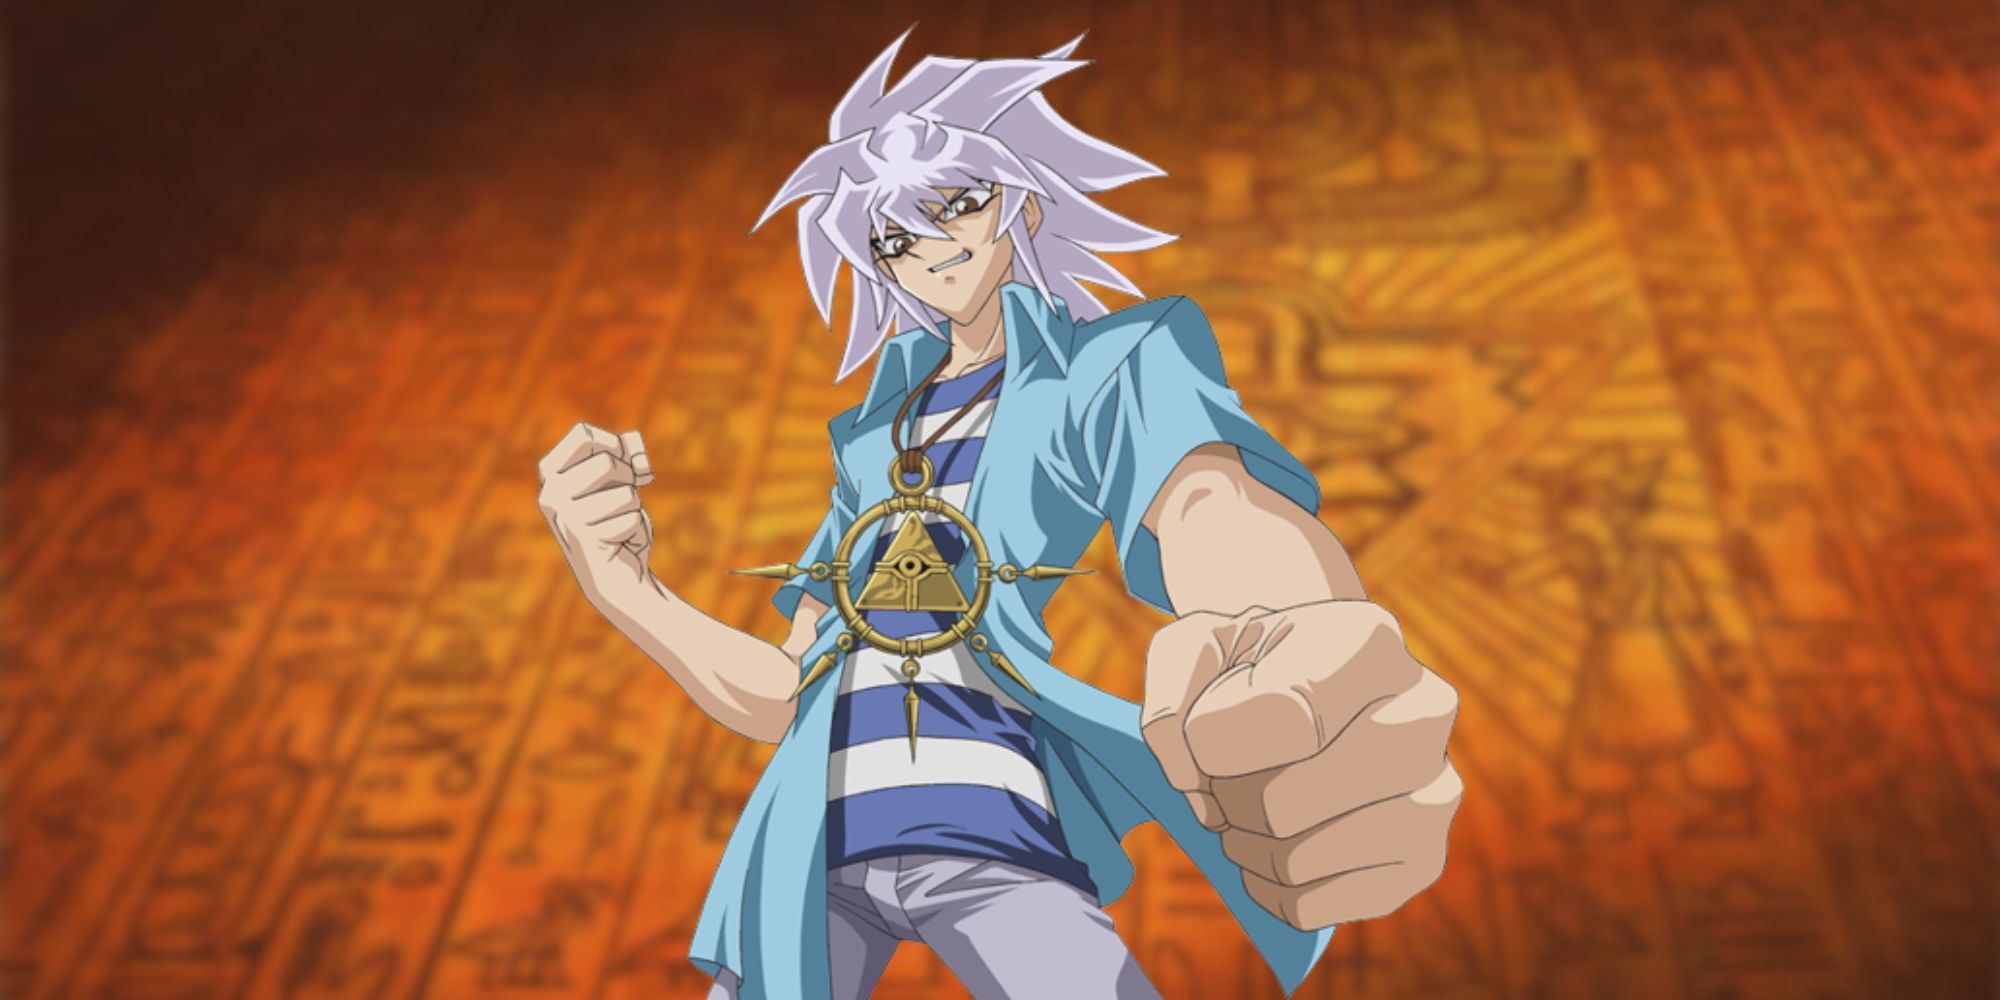 Yu-Gi-Oh! Character: Yami Bakura on a Yu-Gi-Oh Tablet Backdrop